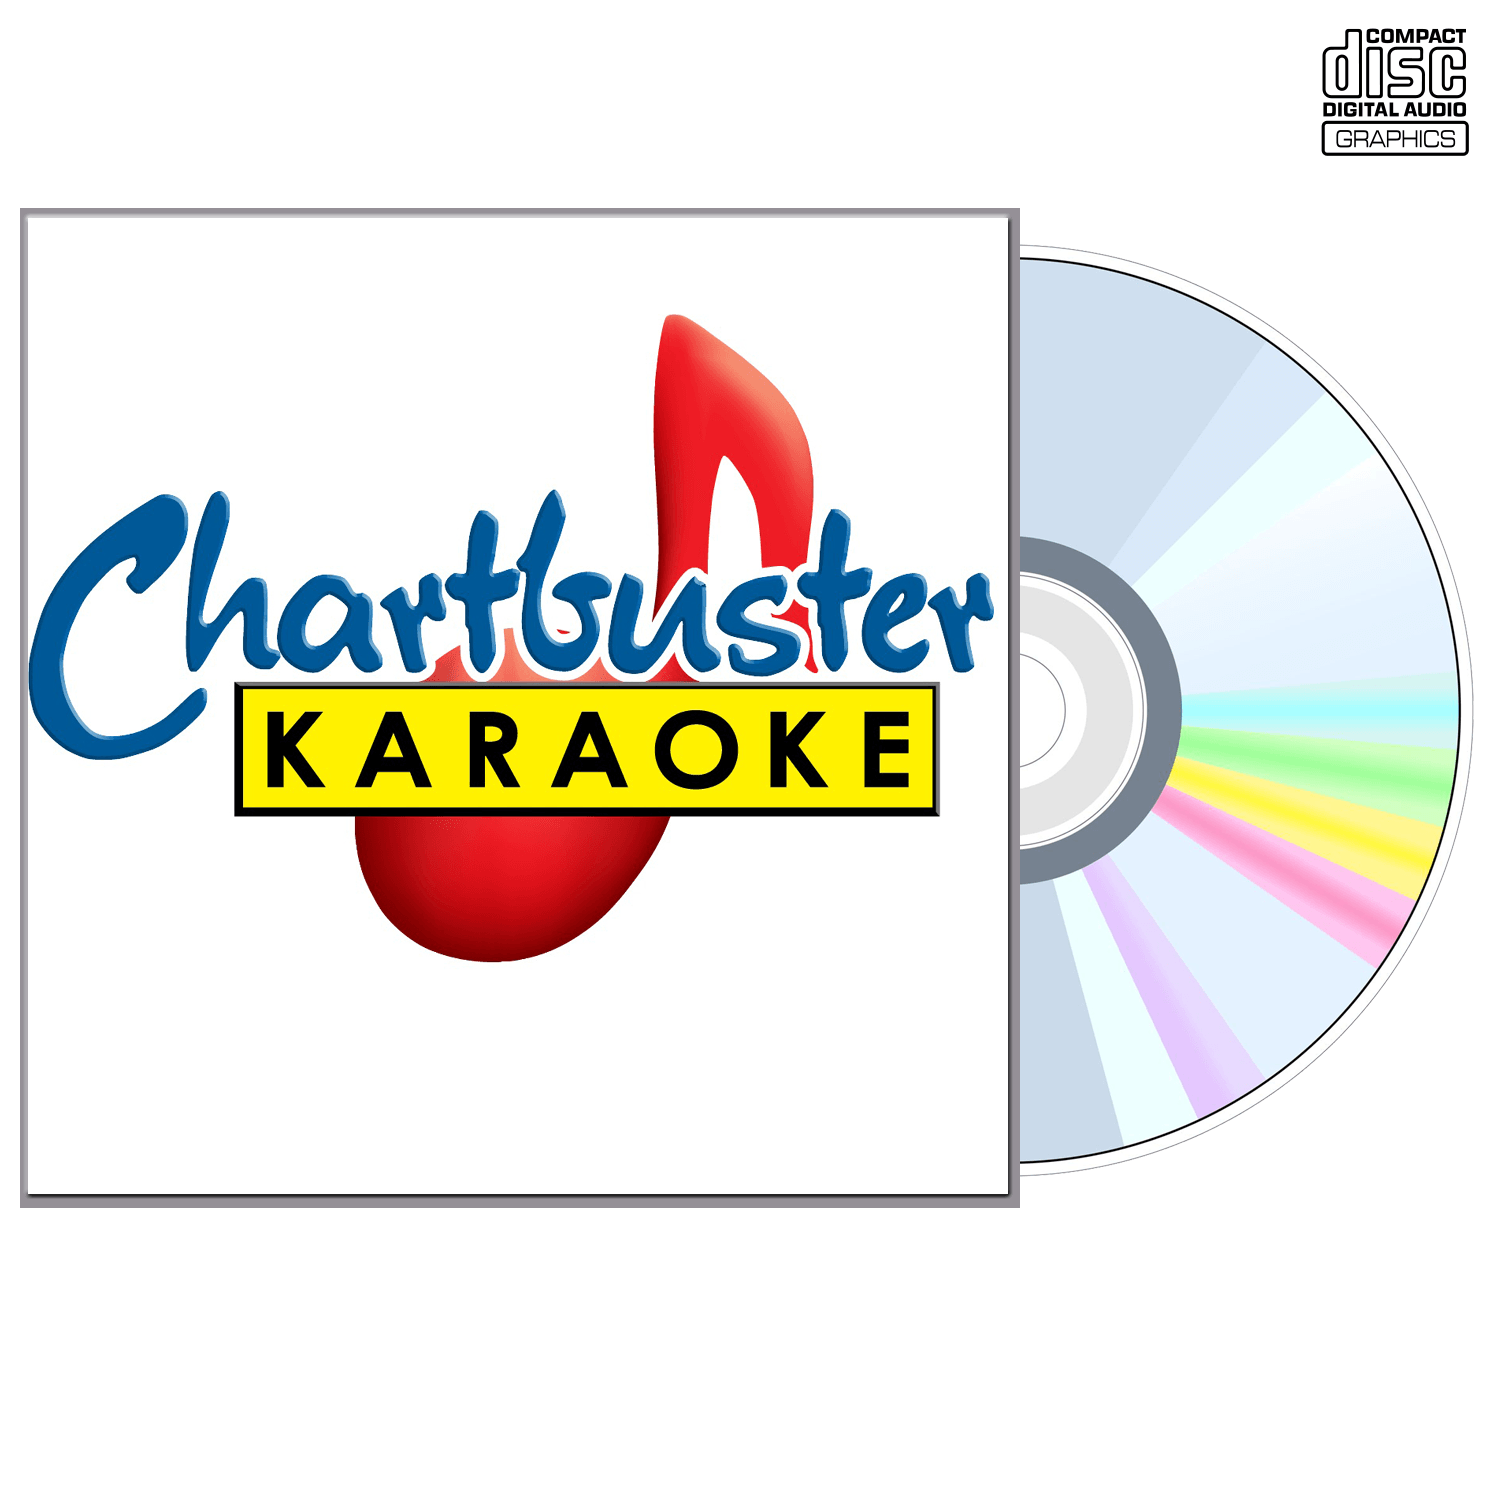 Incubus - CD+G - Chartbuster Karaoke - Karaoke Home Entertainment